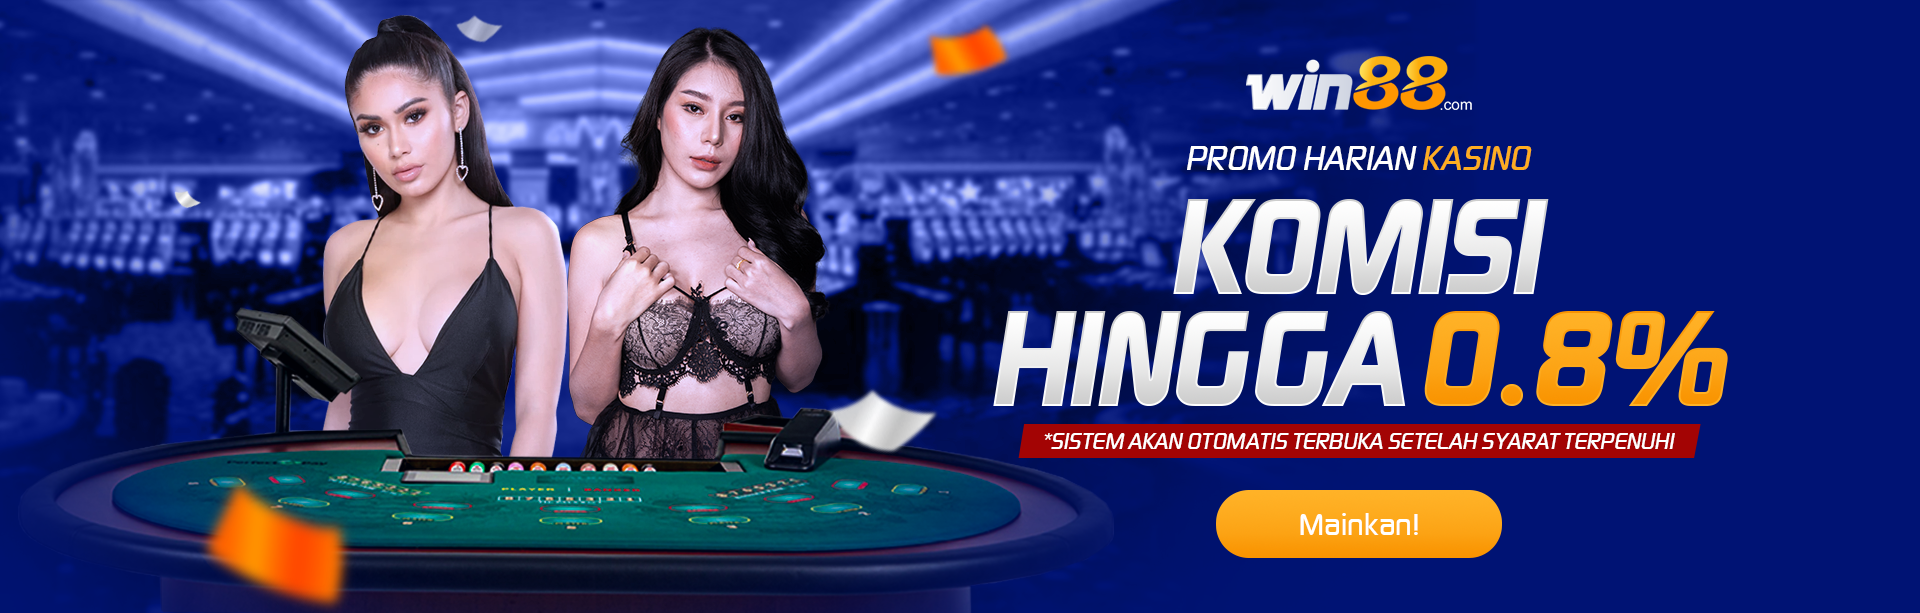 Daily Rebate 08% - Live Casino